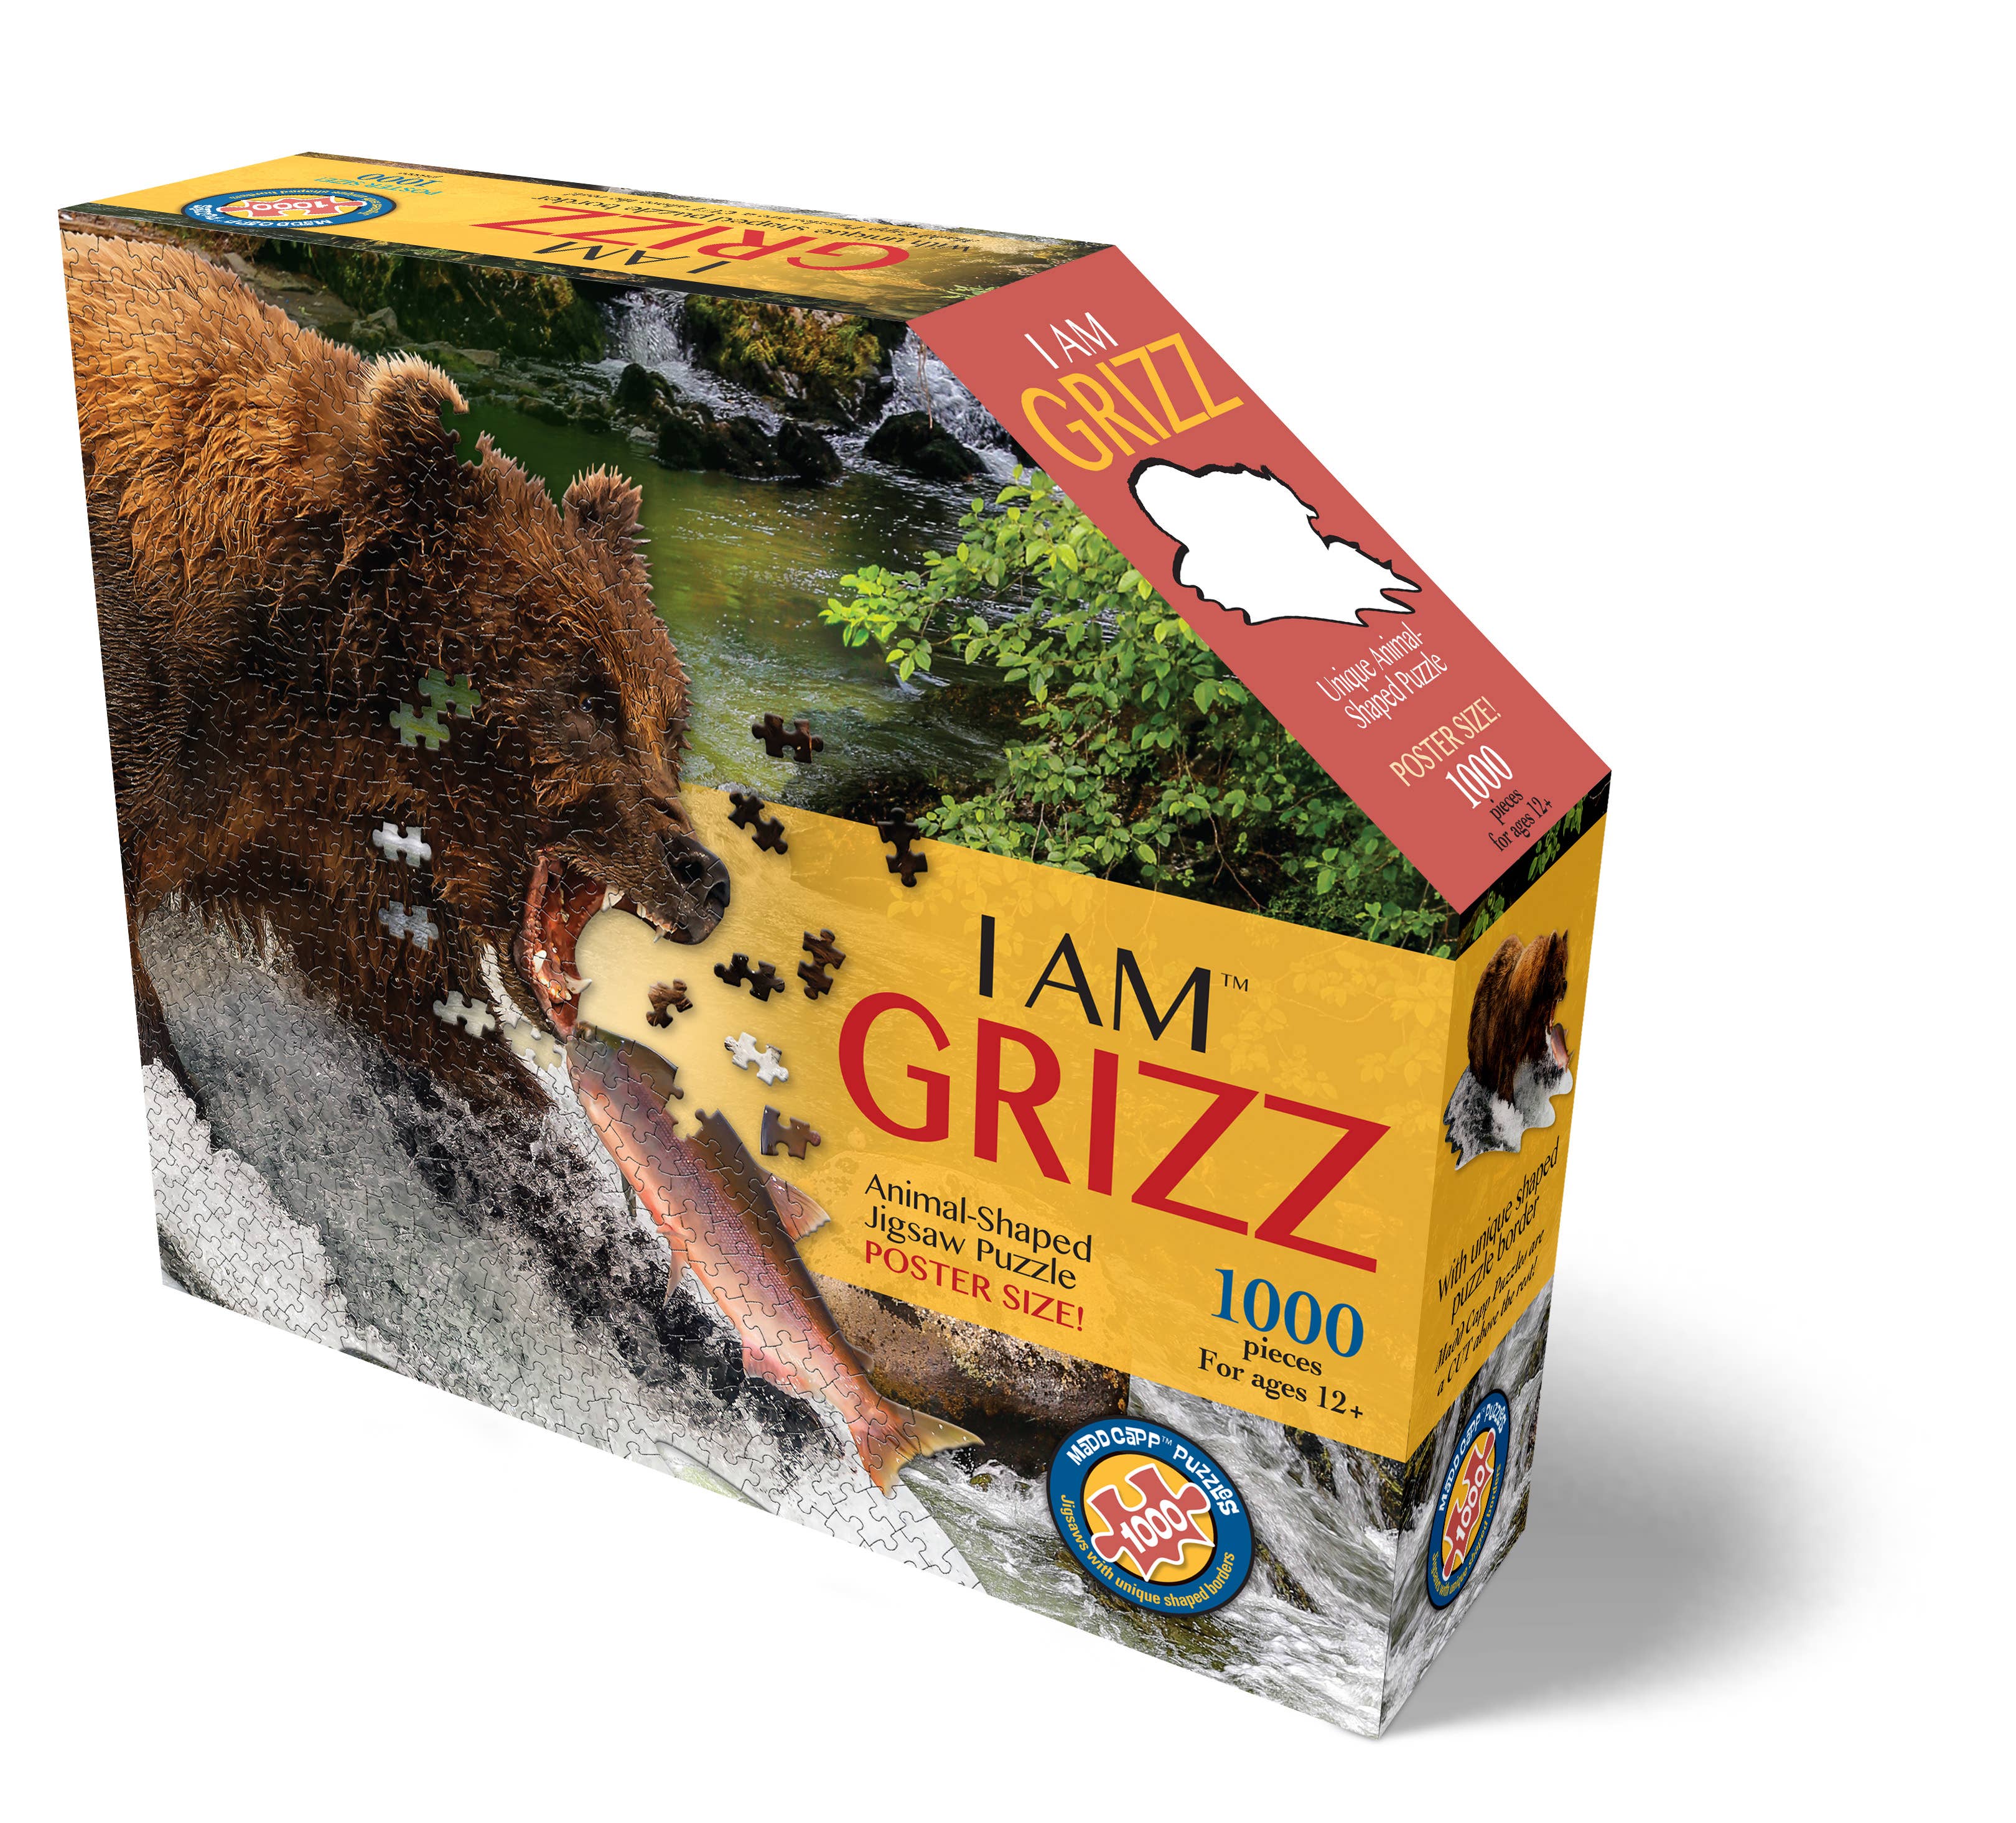 I AM Grizz 1000 piece jigsaw puzzle - gift